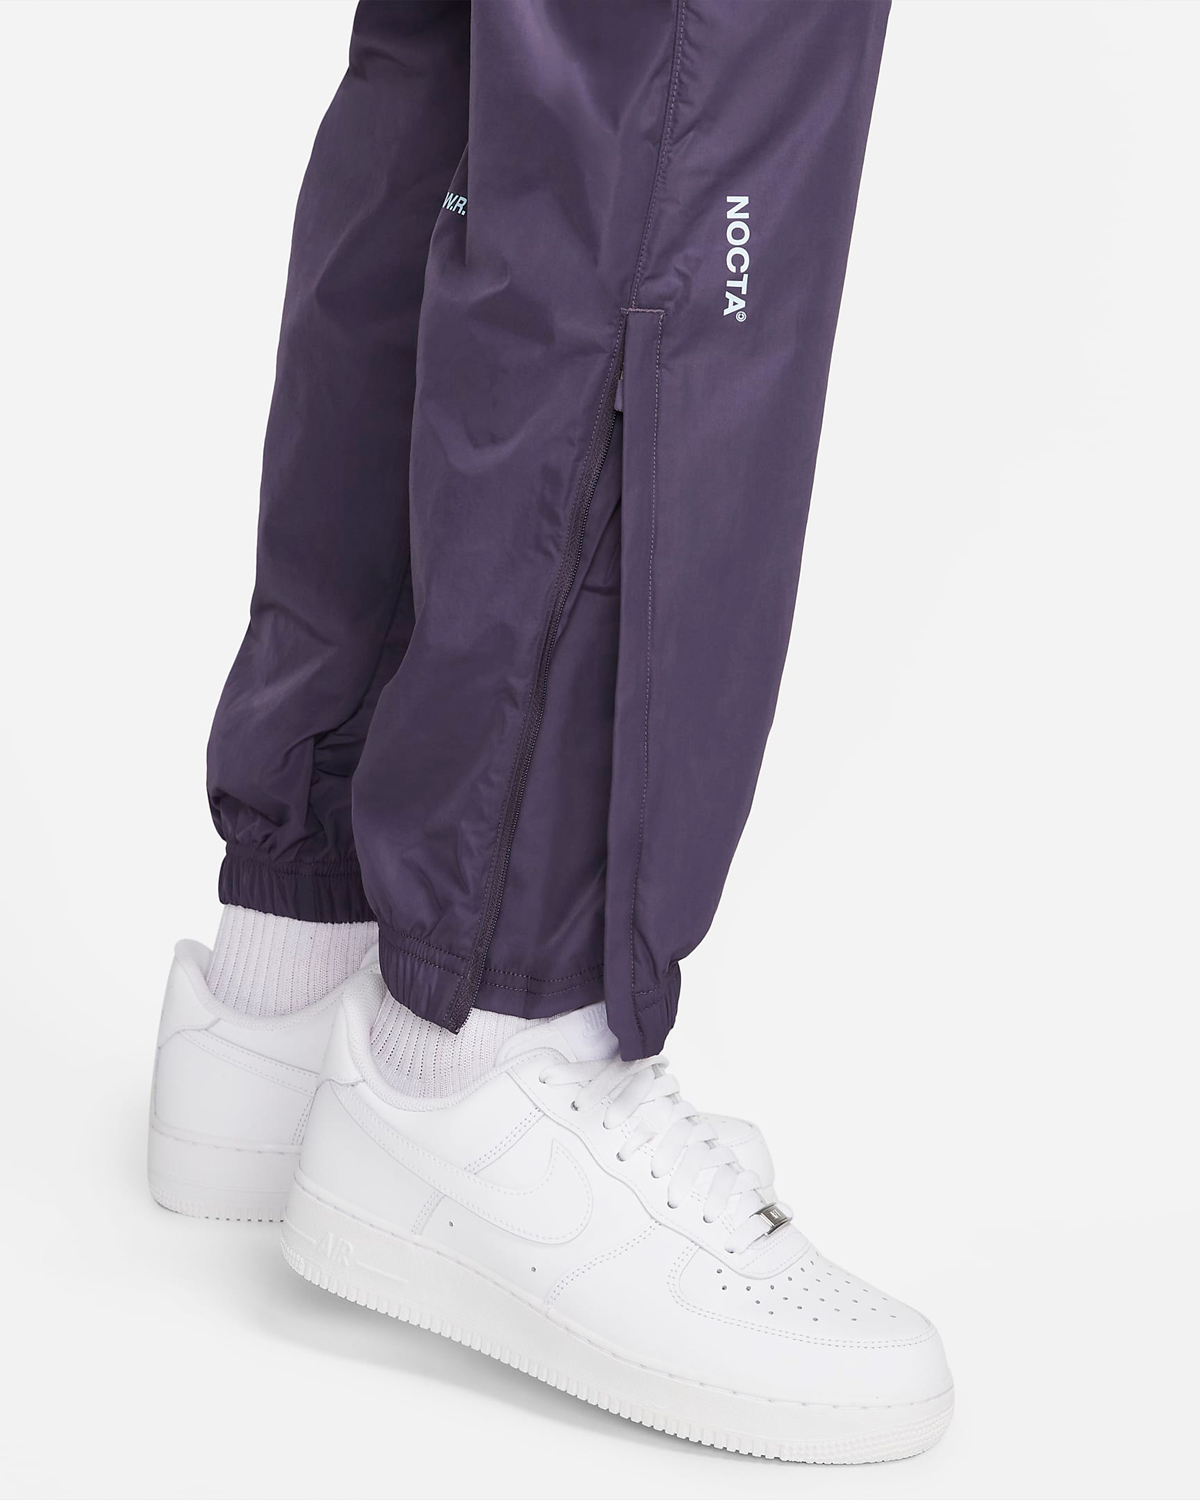 Drake-NOCTA-Nike-Track-Pants-Purple-4